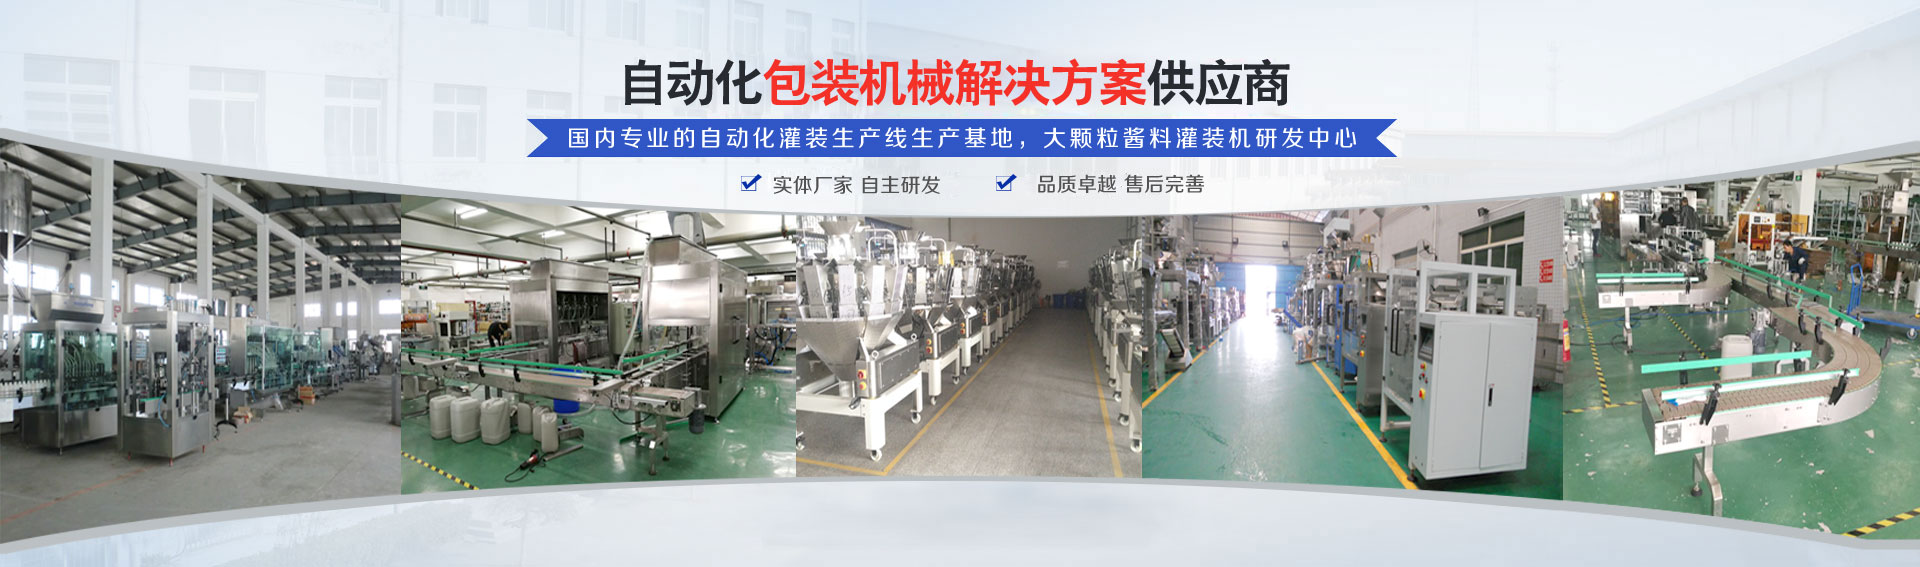 专业的(de)自(zi)动化灌装(zhuang)机生产线研发基地